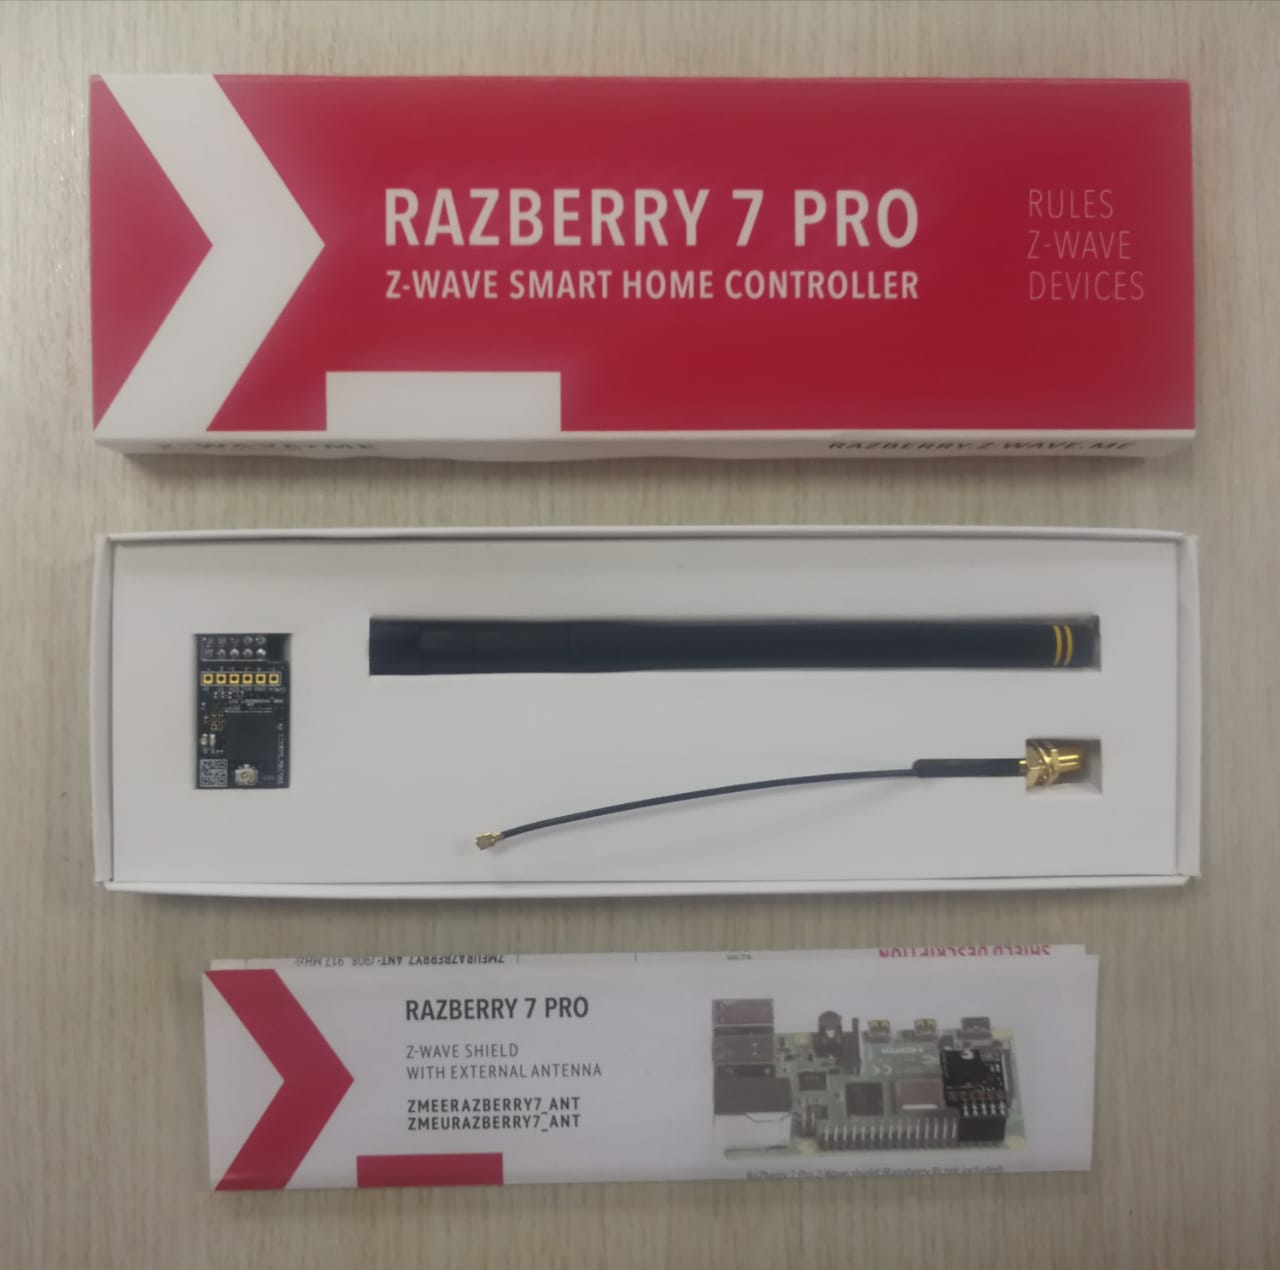 RaZberry 7 Pro packed